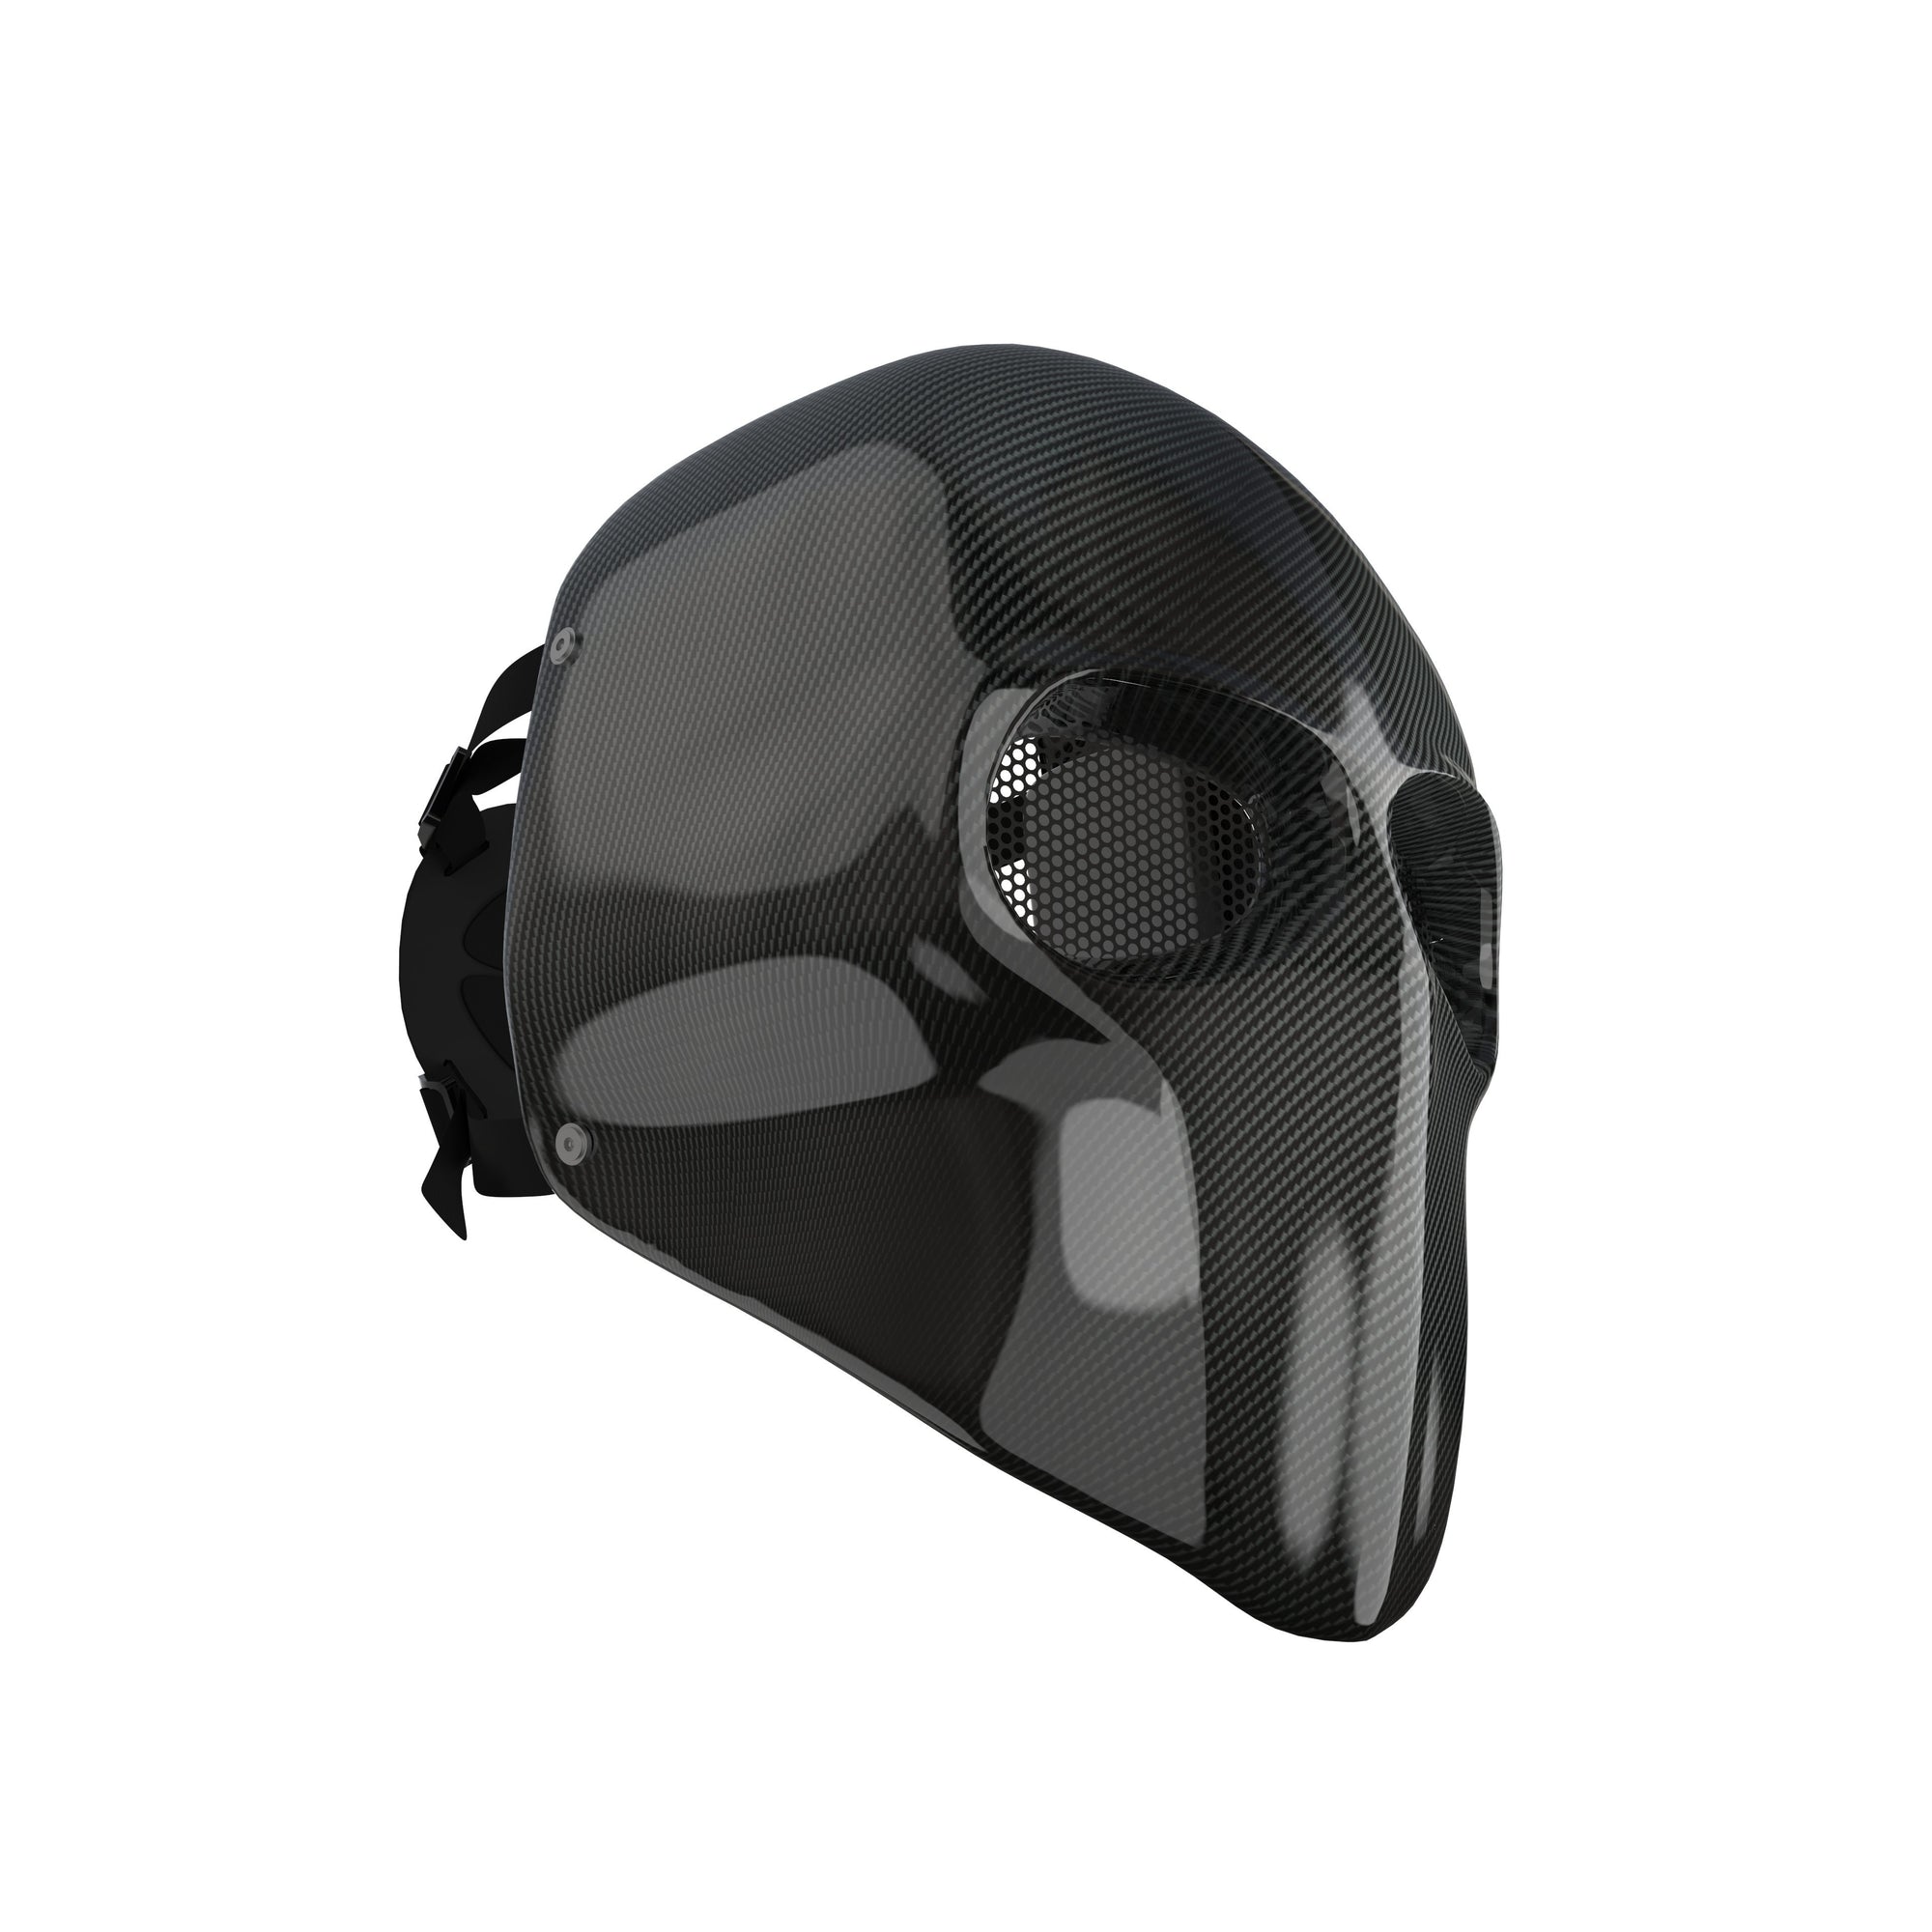 Lv Face Masks for Sale - Pixels